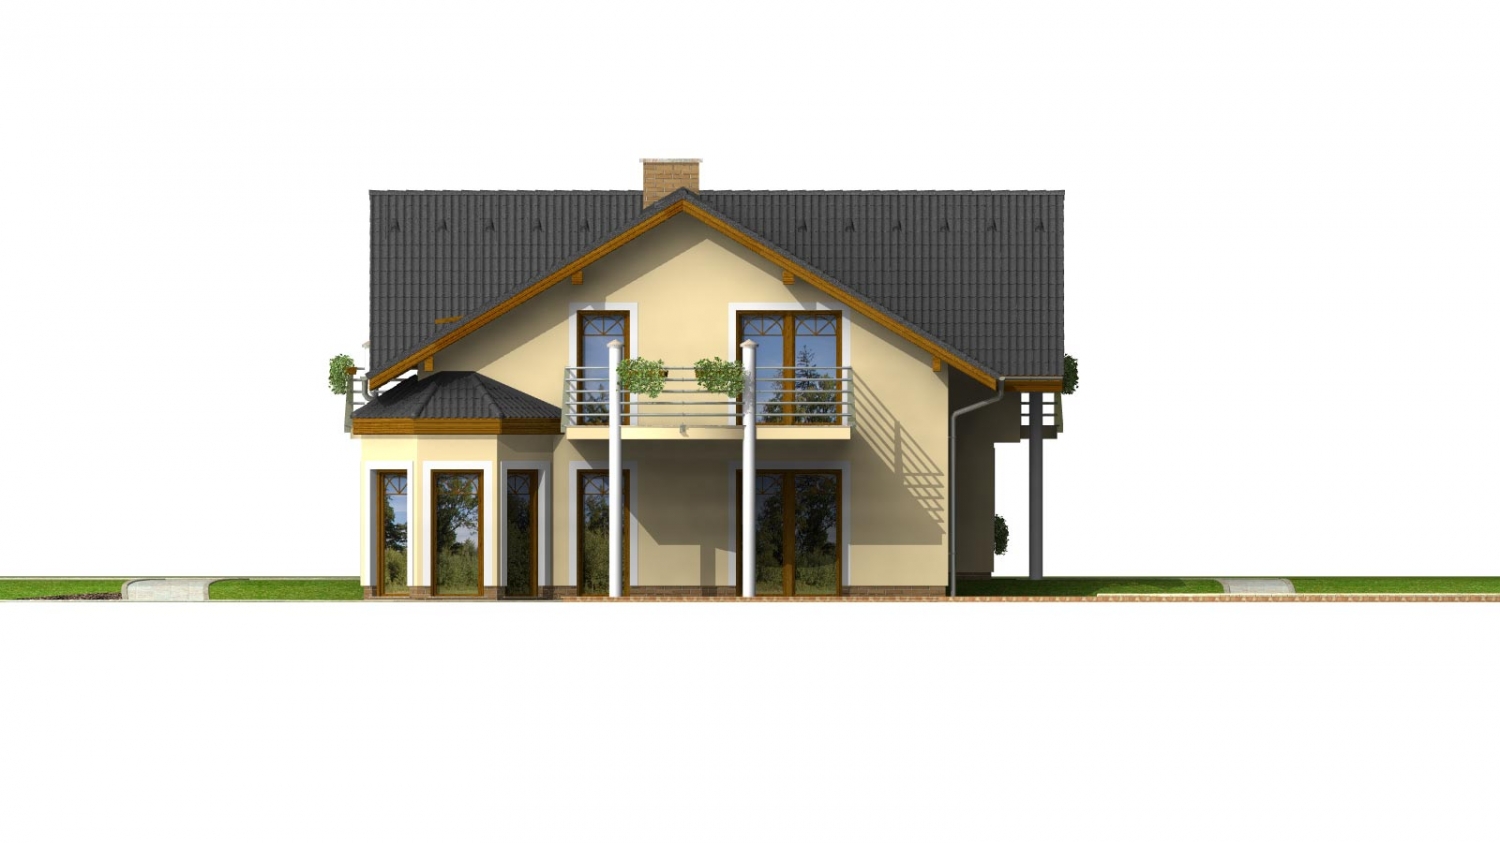 Zrkadlový pohľad 4. - Velký podsklepený rodinný dům s dvojgaráží a sedlovou střechou. Možnost dvougeneračního bydlení.